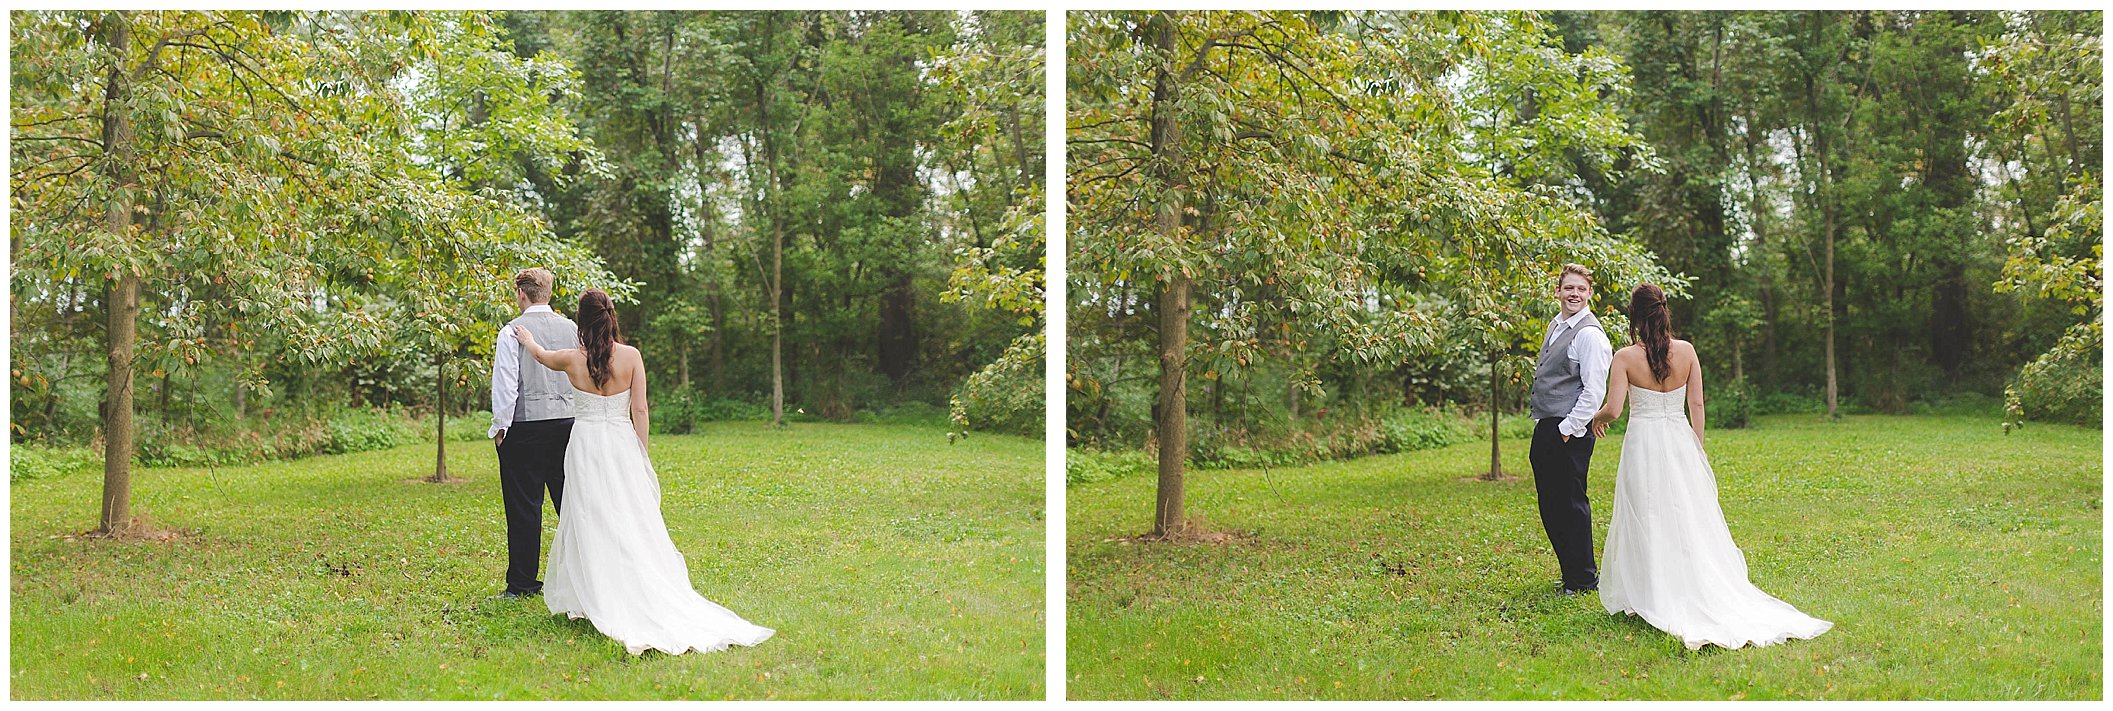 Stunning backyard wedding with twinkly lights, Fort Wayne Indiana Wedding Photographer_0030.jpg